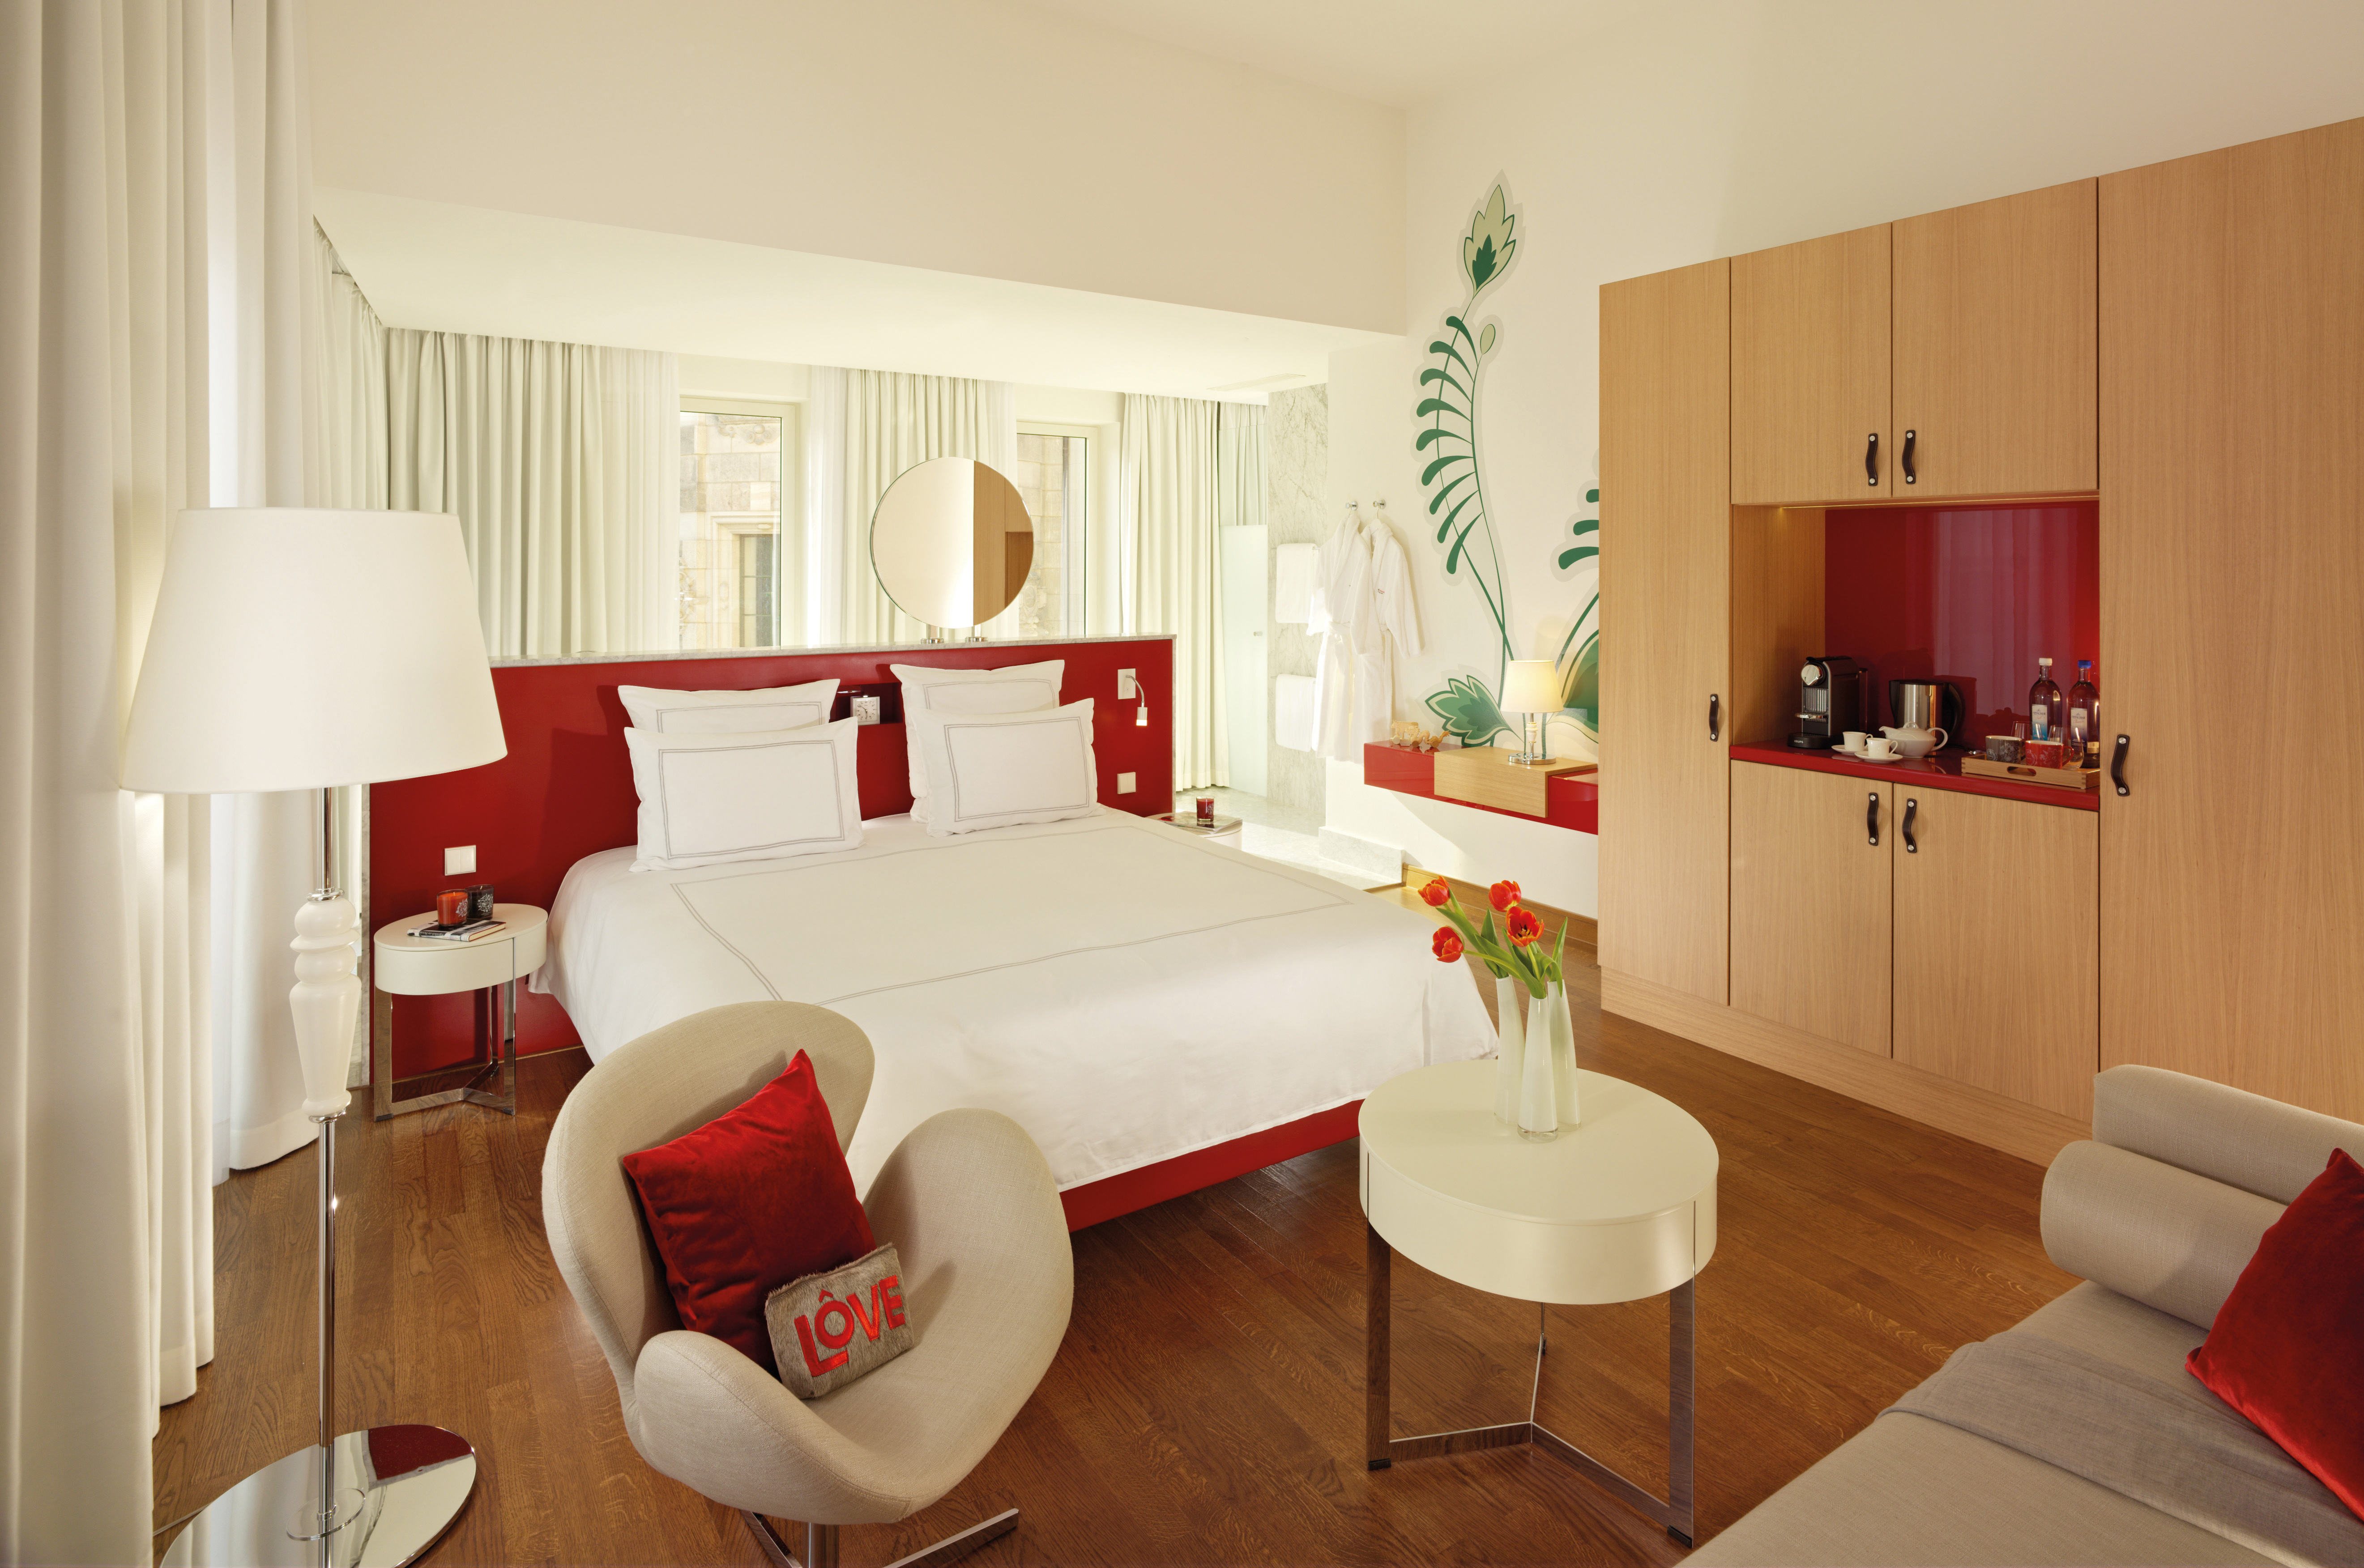 h-hotels_zimmer-grand-room-01-hyperion-hotel-dresden-am-schloss_Original (kommerz. Nutzung) _18-05-2018-100225.jpg